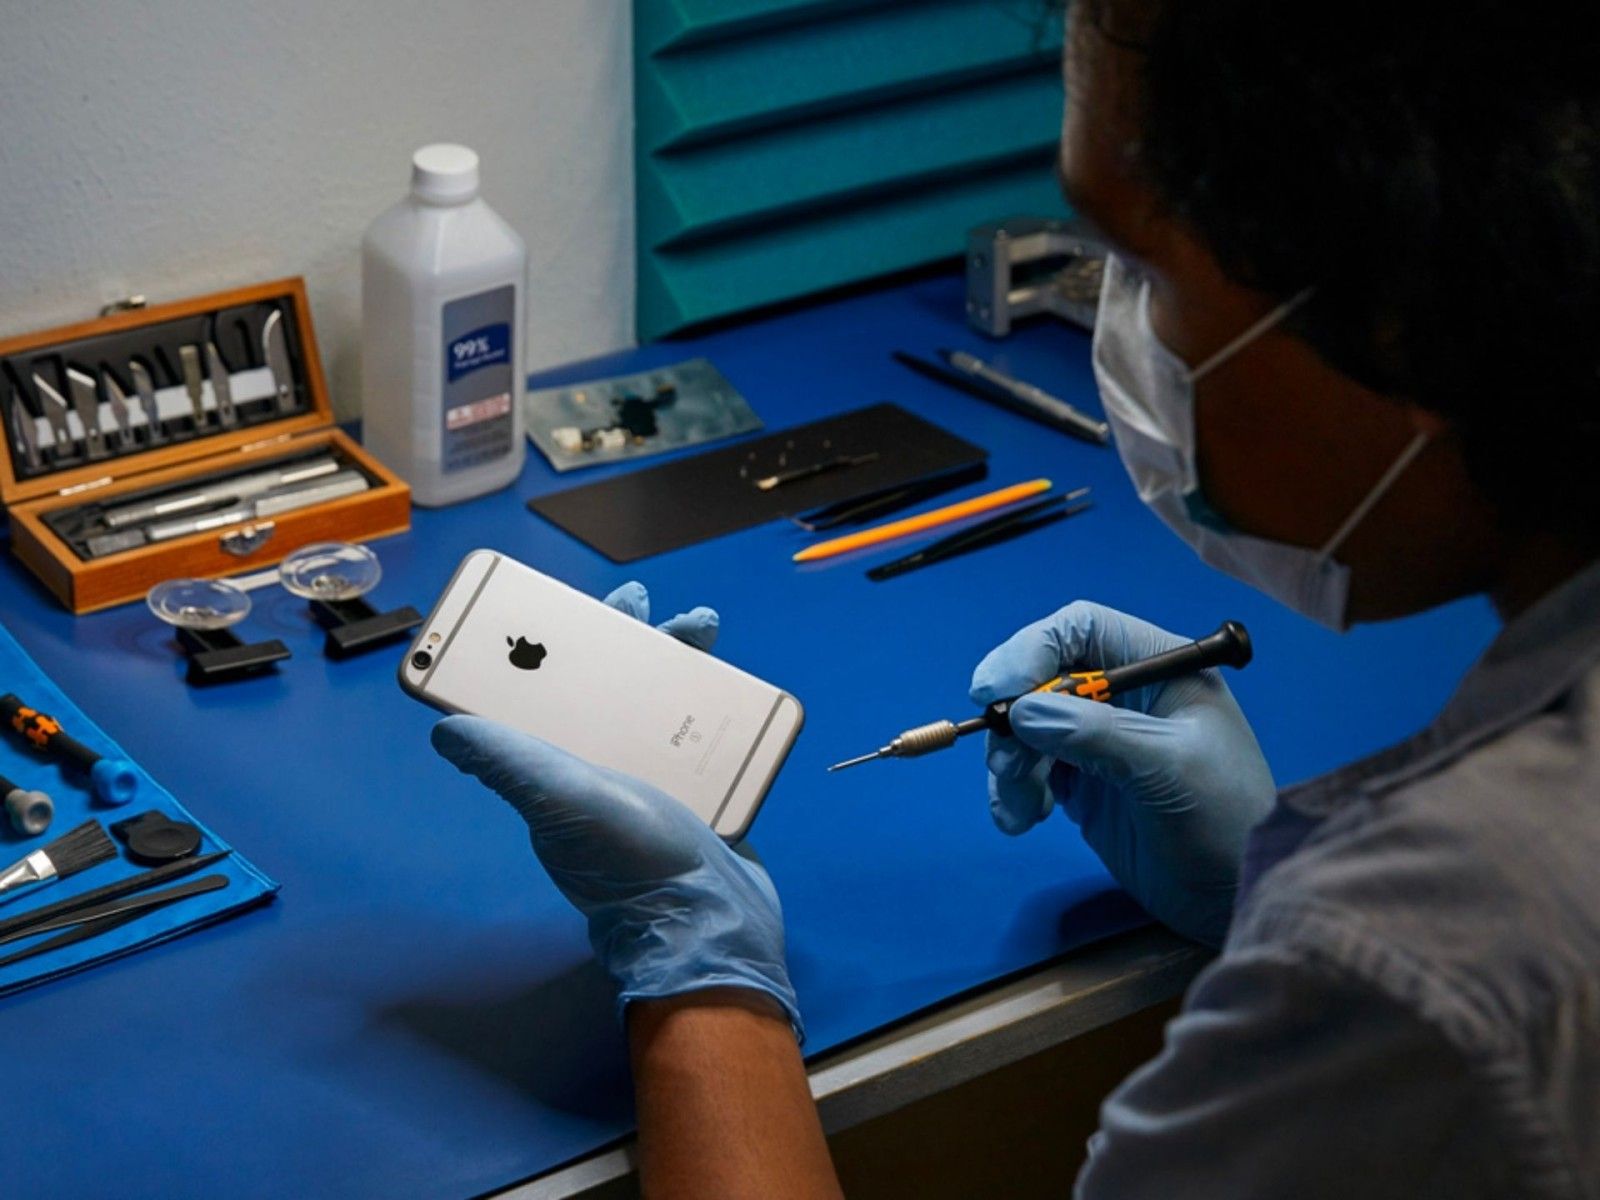 آیفون 6 اس اپل در حال بررسی و تعمیر است